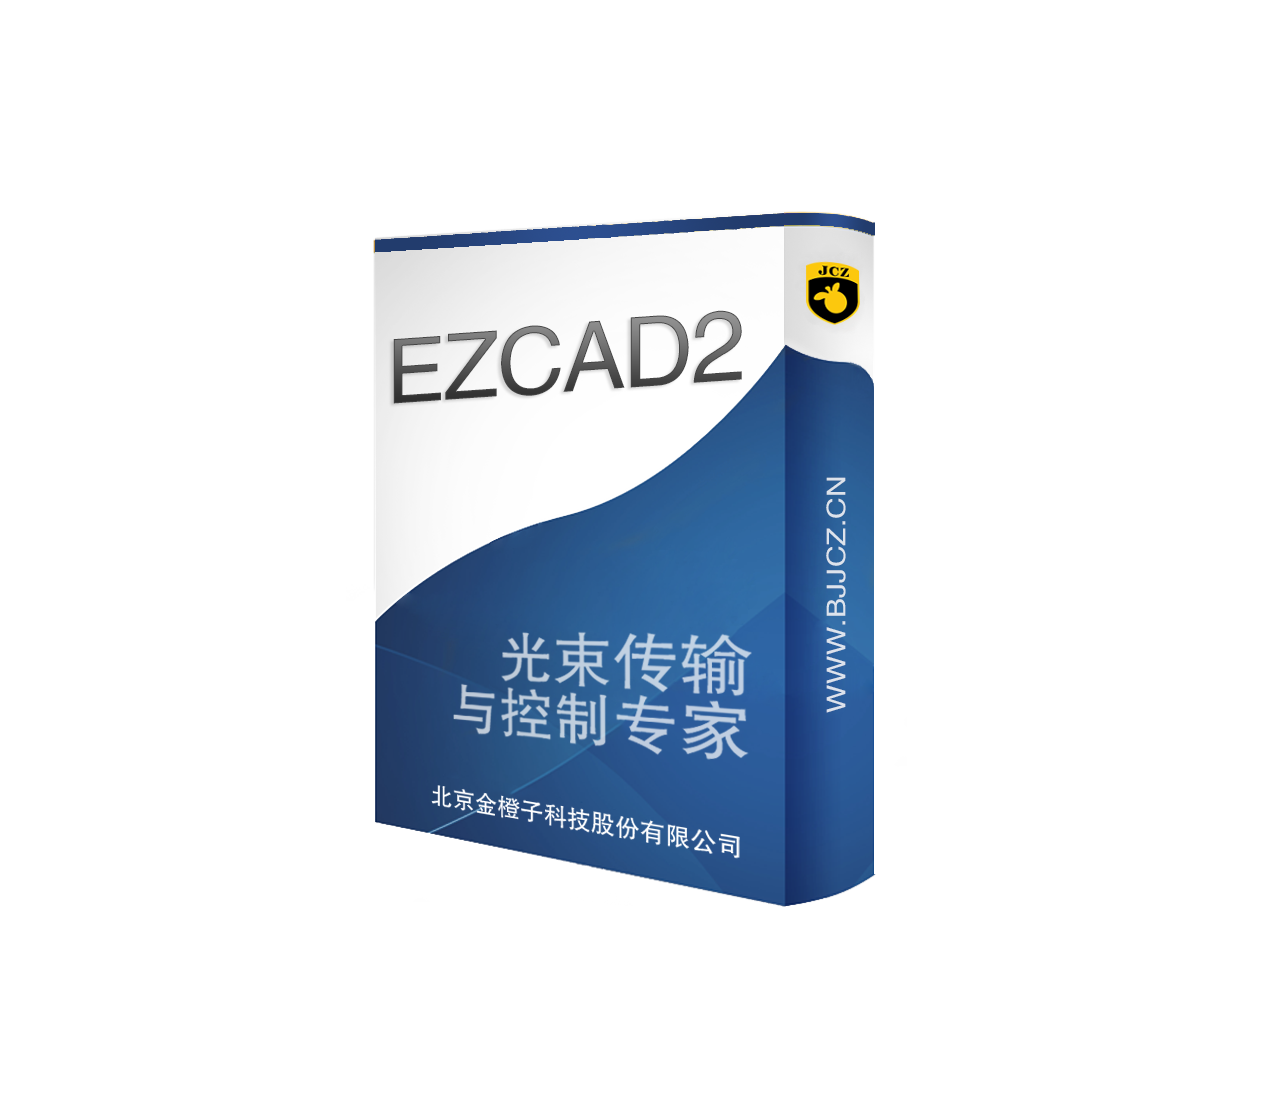 Ezcad2激光标刻控制系统